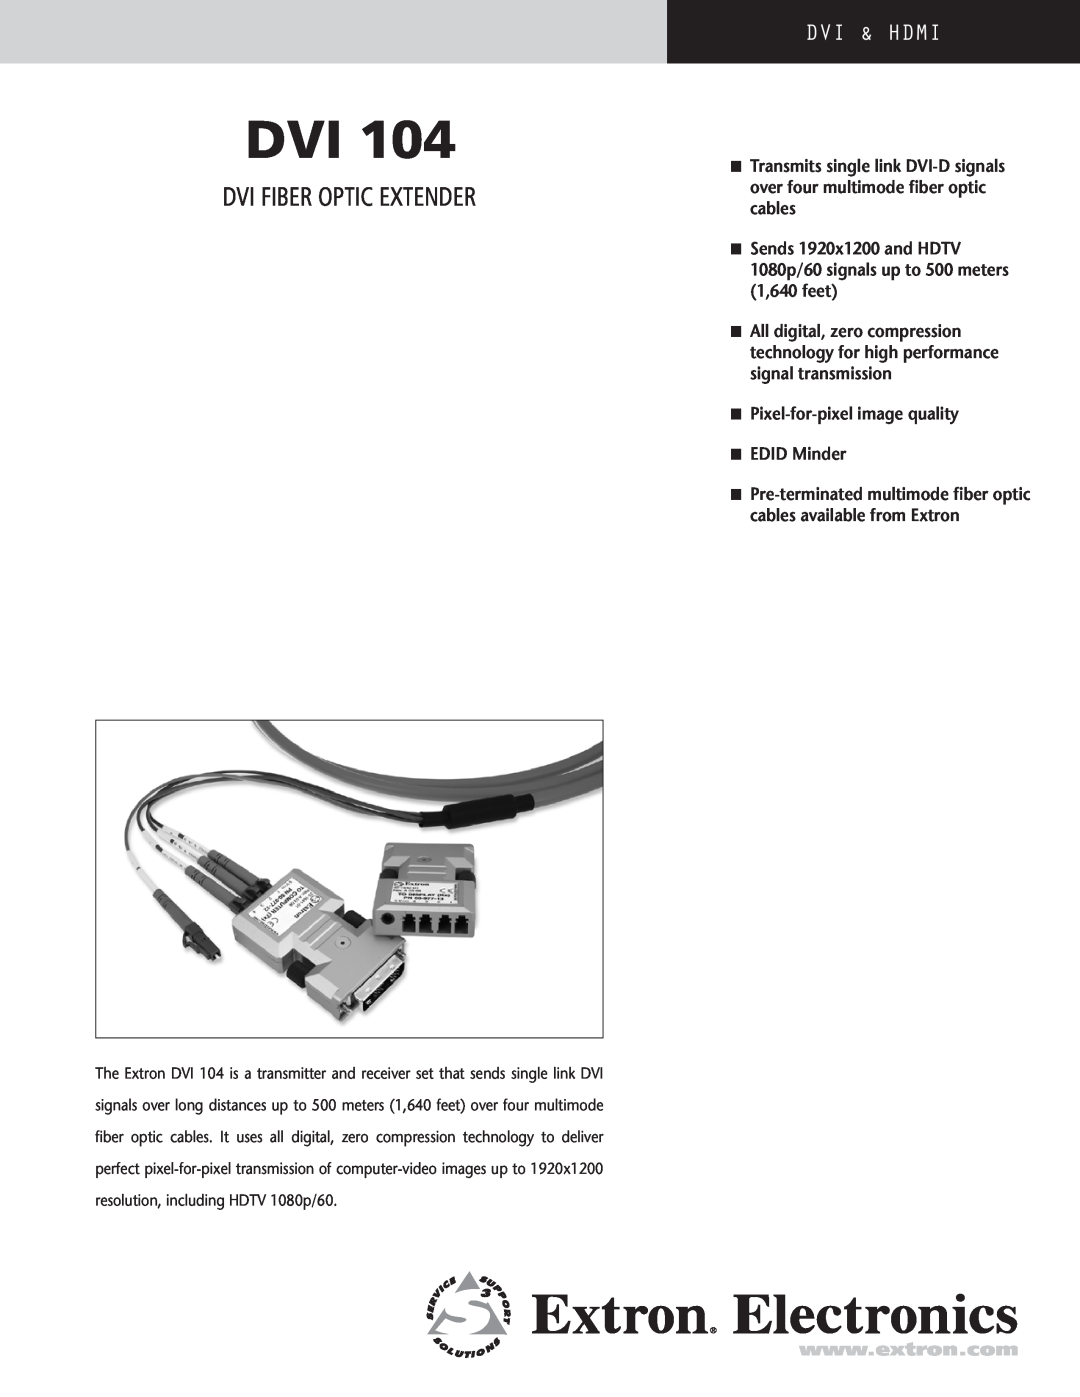 Extron electronic DVI 104 manual DVI Fiber Optic Extender, DVi & HDMI 